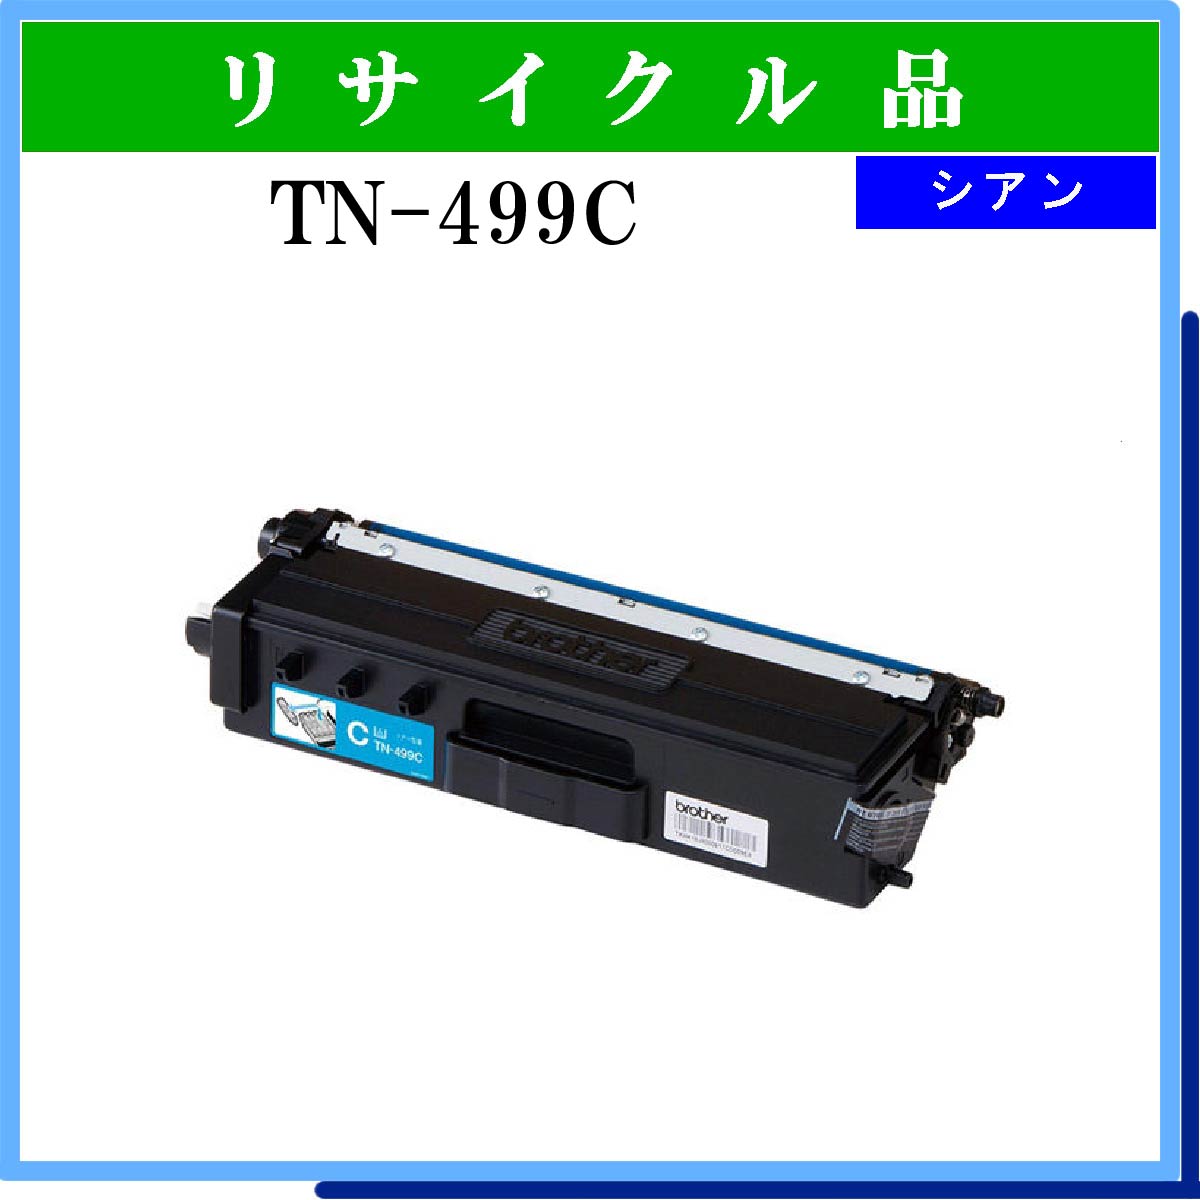 TN-499C